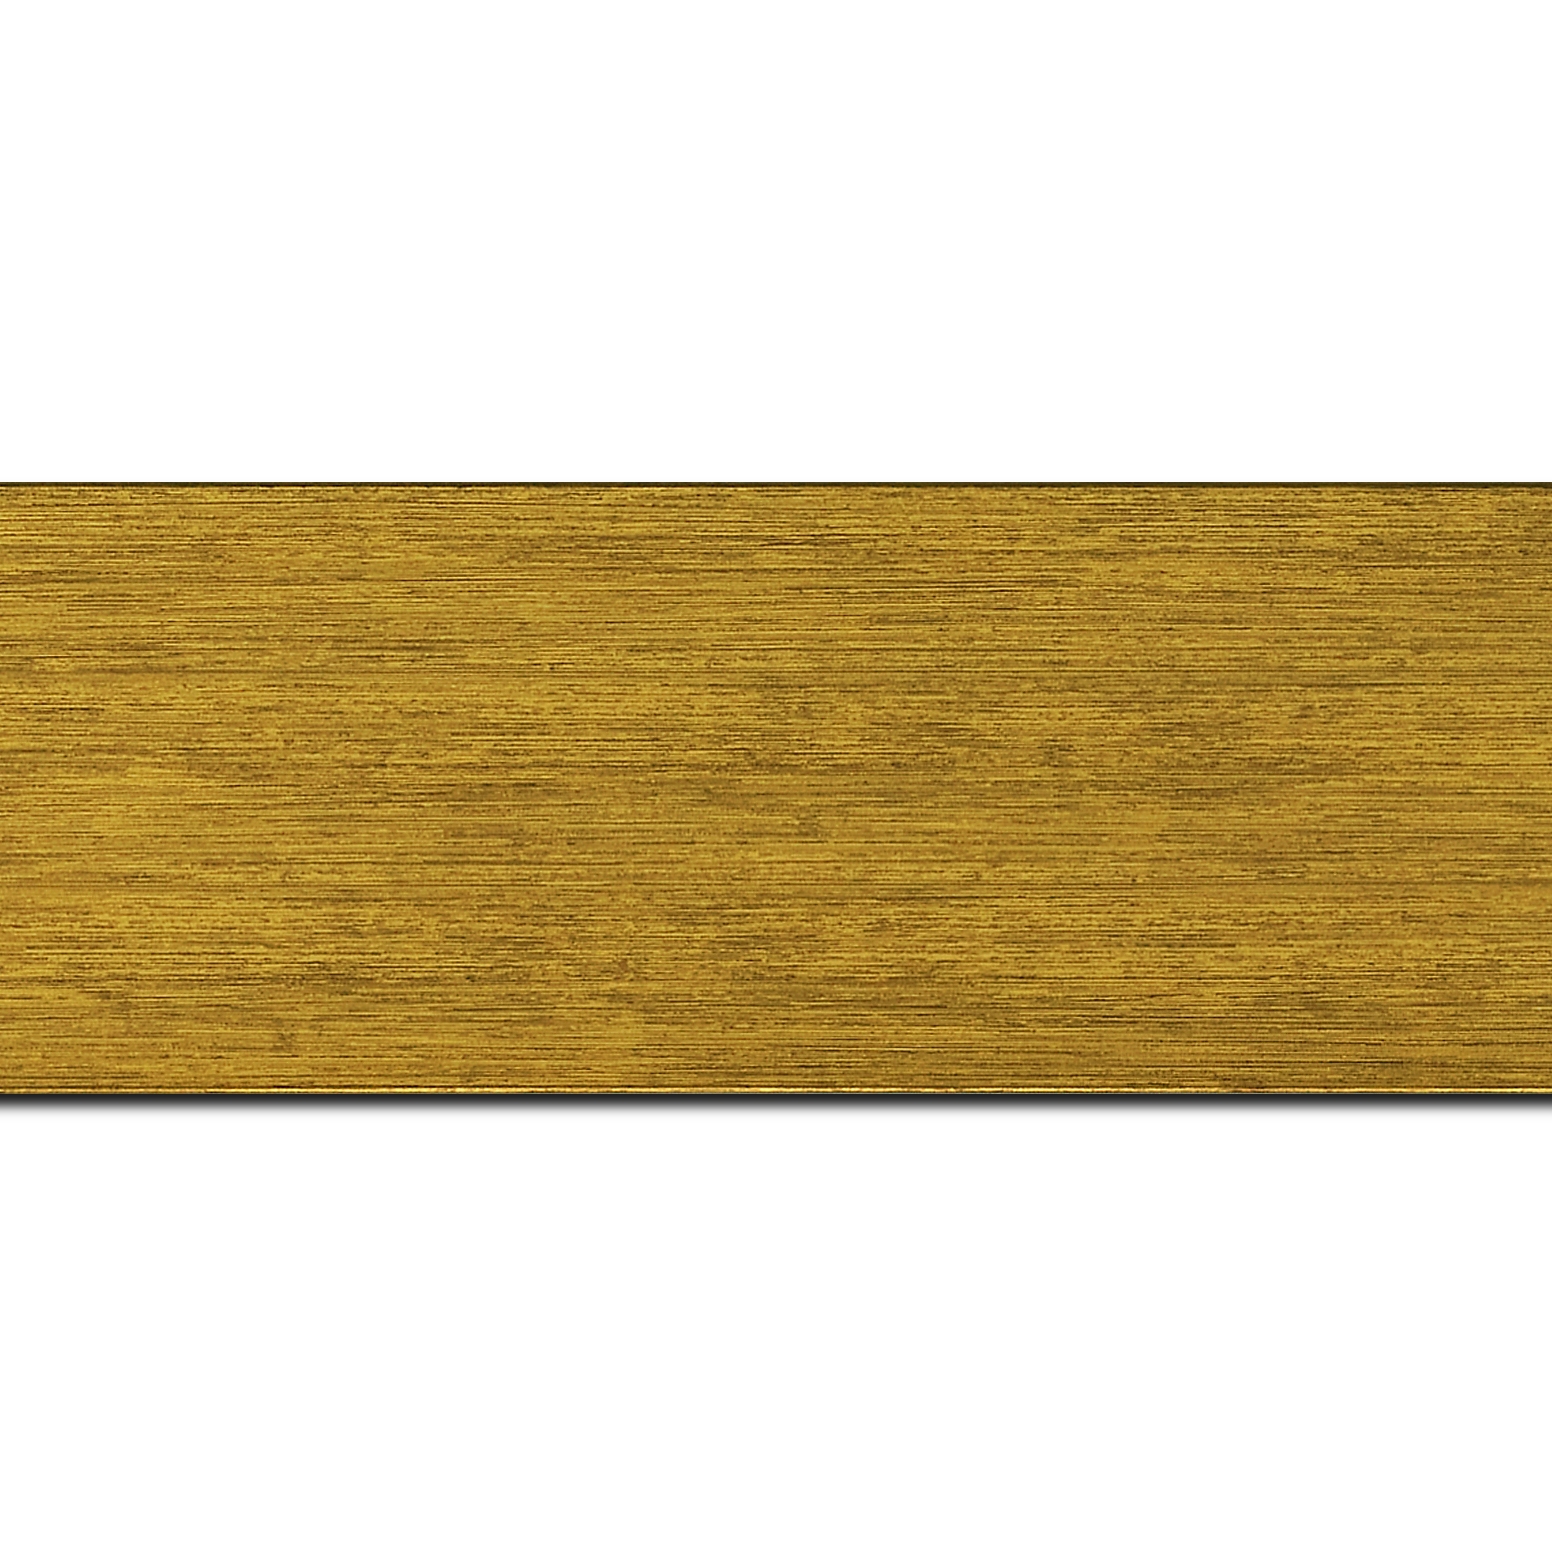 Pack par 12m, bois profil plat largeur 6cm couleur or contemporain satiné haut de gamme  (longueur baguette pouvant varier entre 2.40m et 3m selon arrivage des bois)